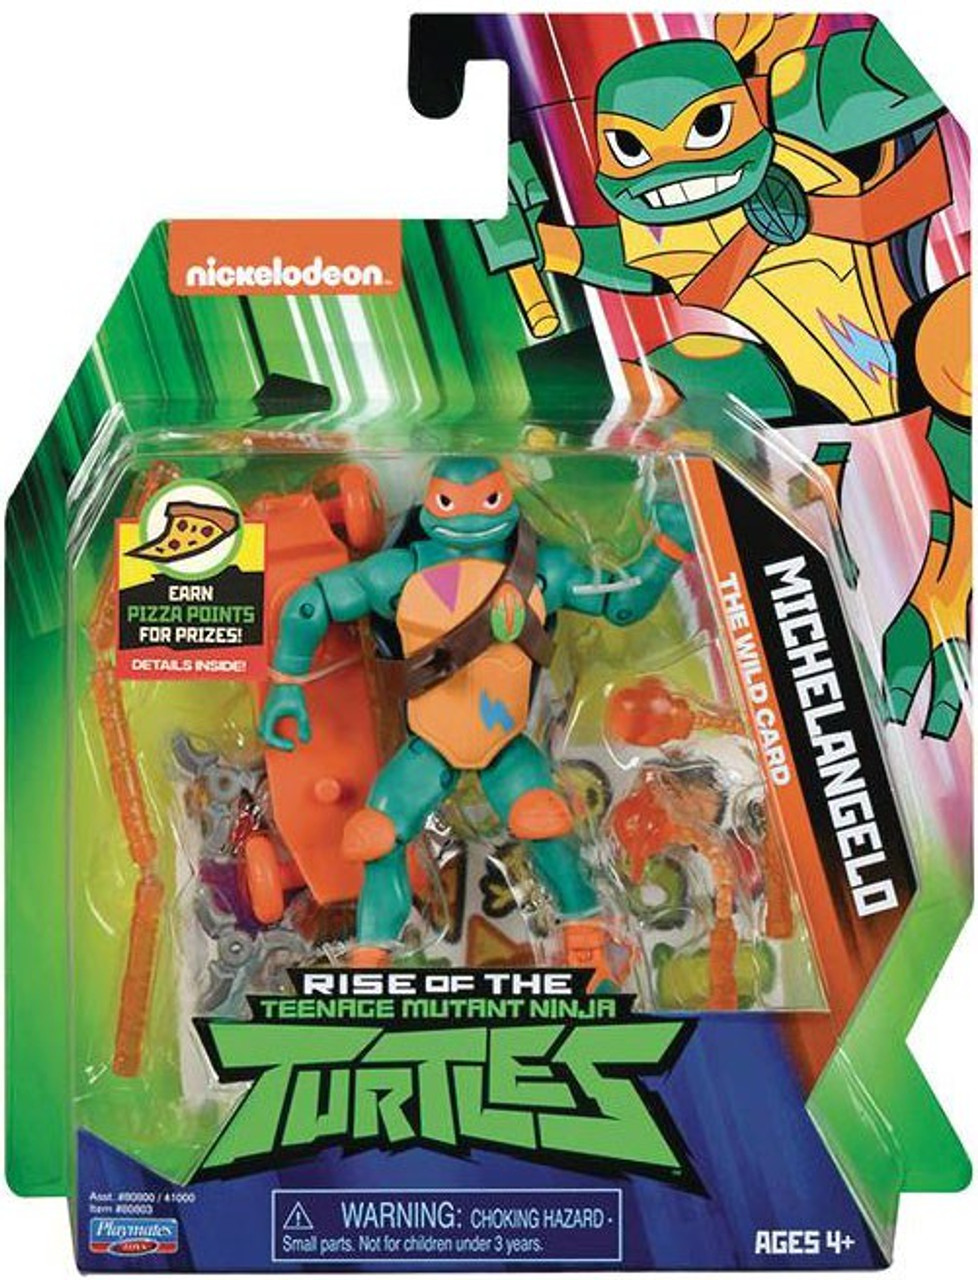 rise of the teenage mutant ninja turtles toys